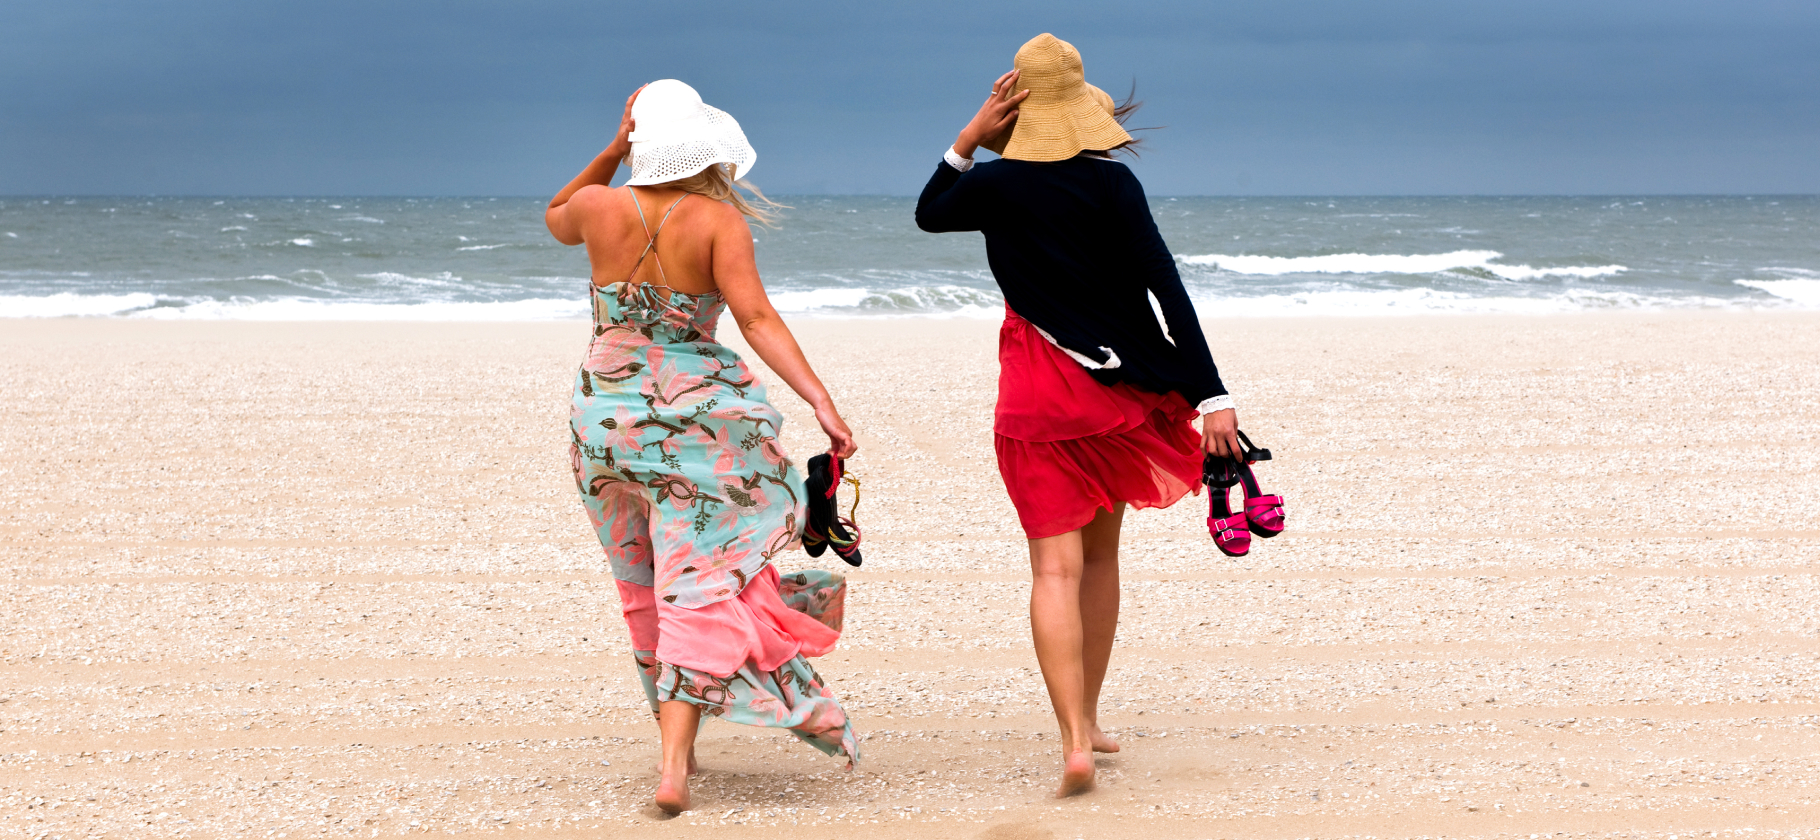 «Говорили, что нас могут арестовать на пляже»: 7 историй про испорченный турагентами отдых